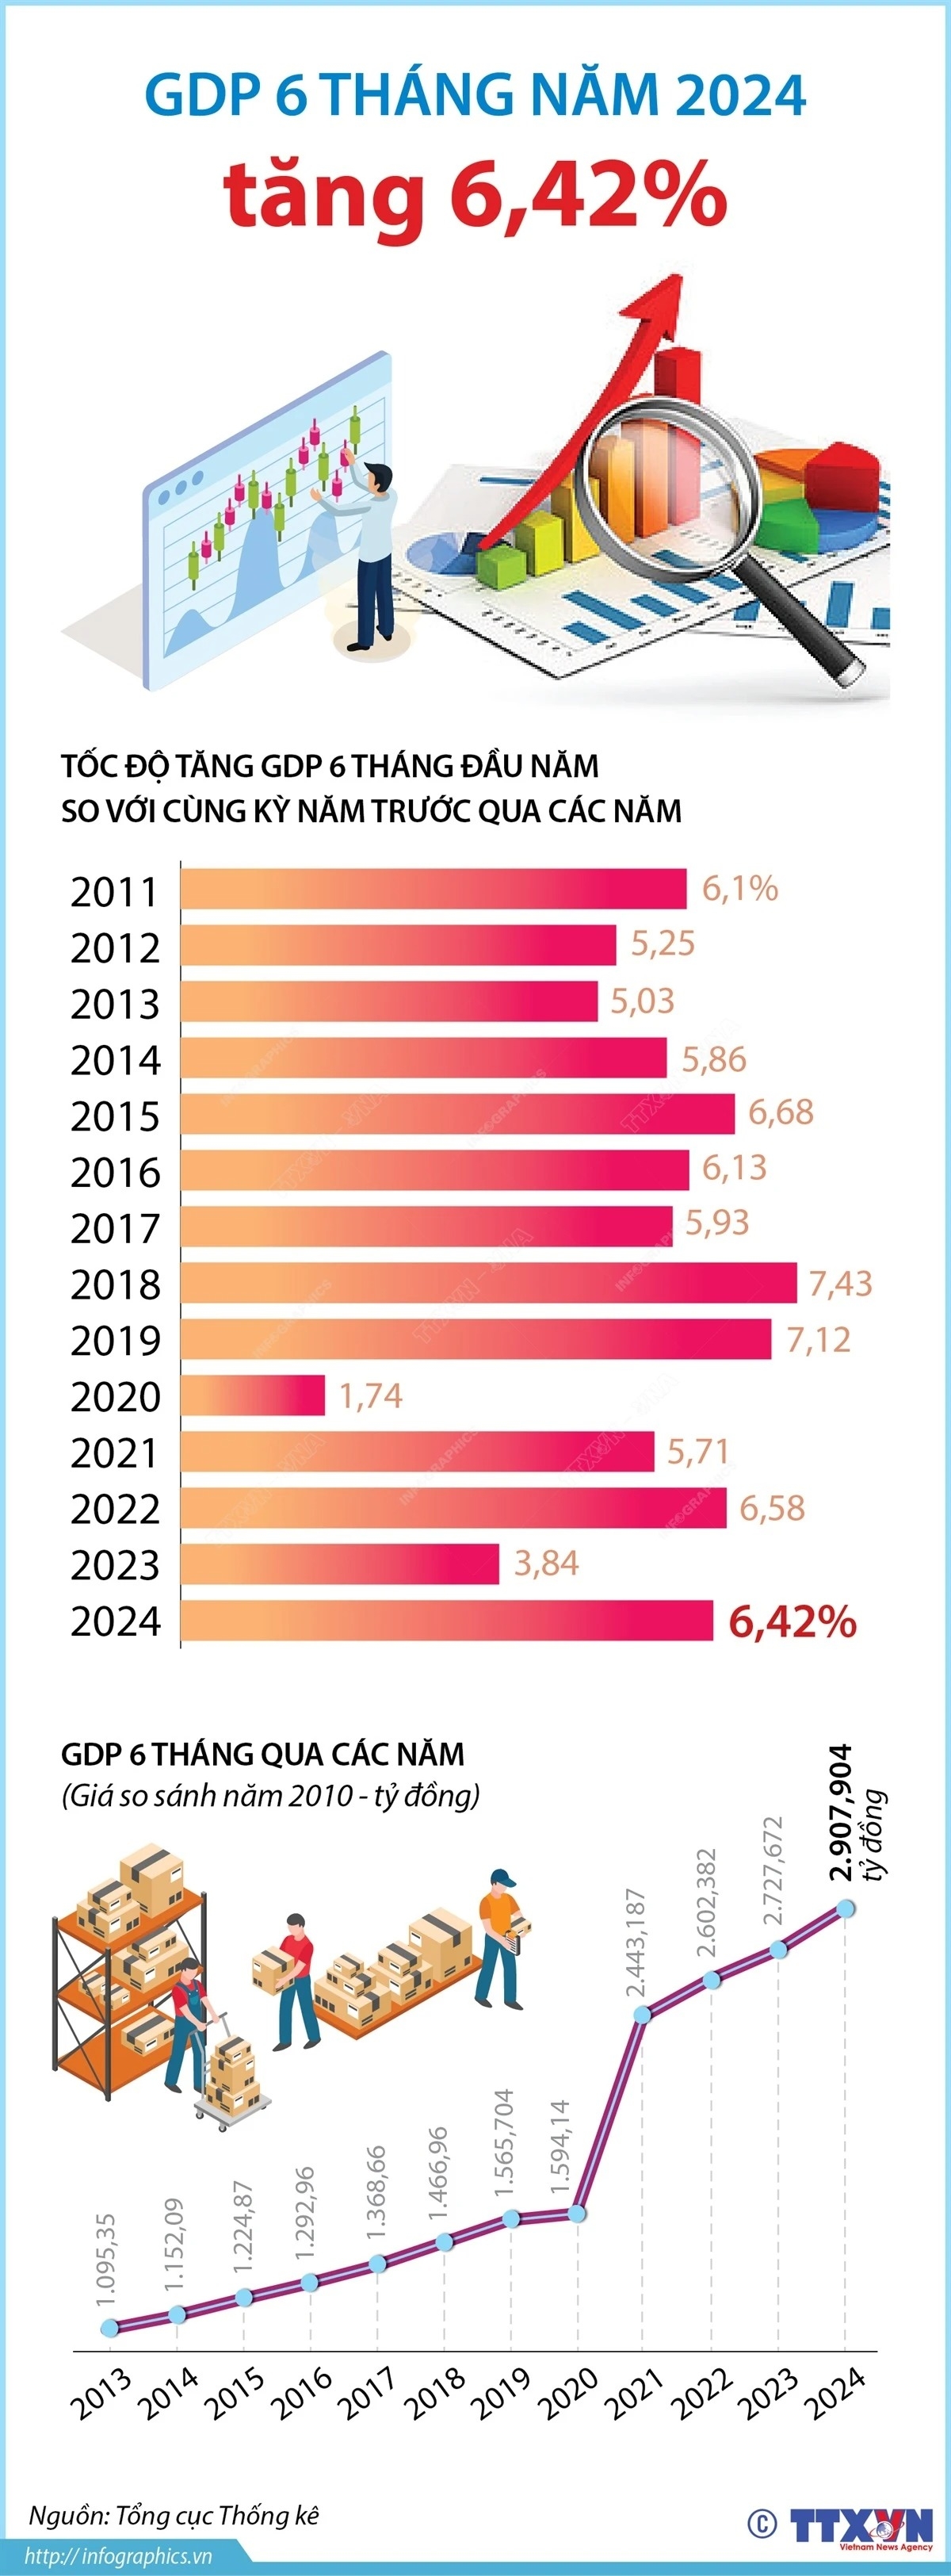 GDP của cả nước 6 tháng năm 2024 tăng 6,42%